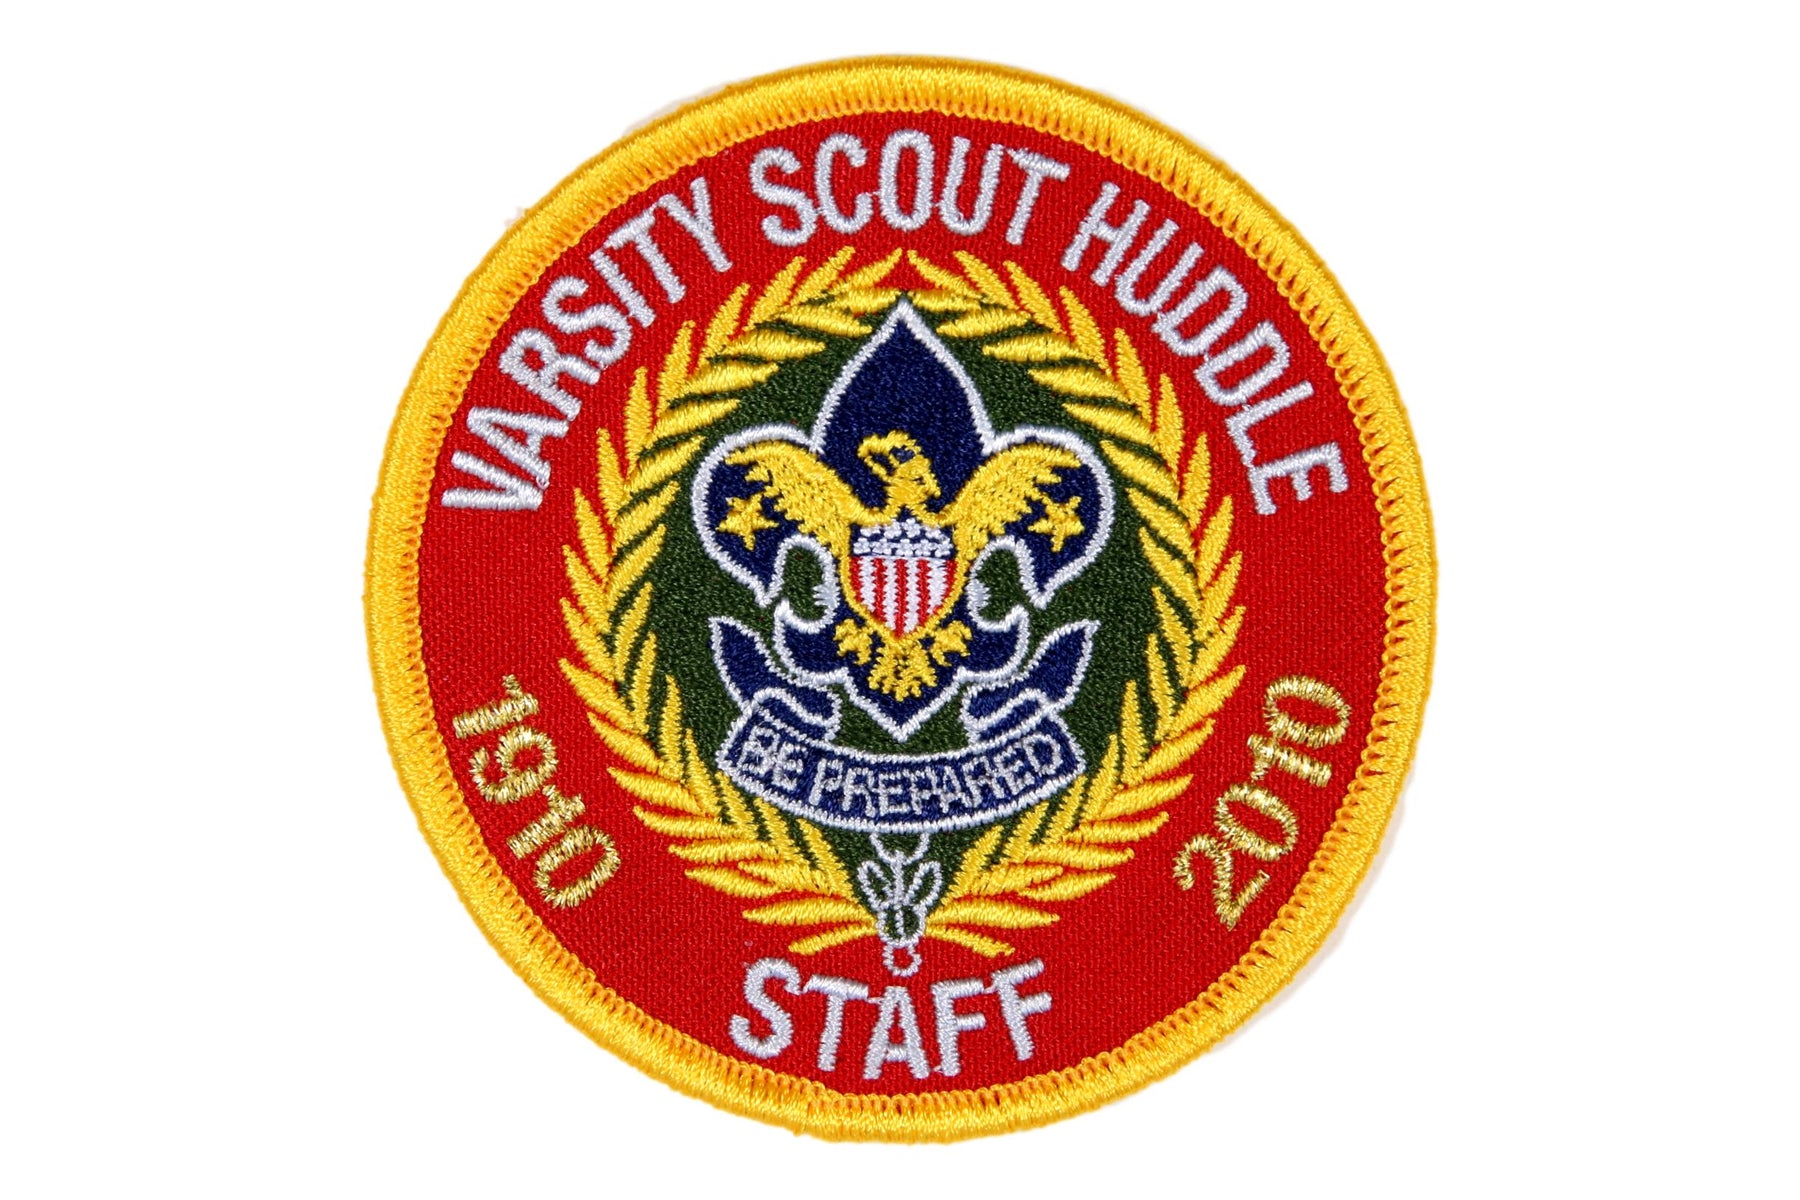 Varsity Scout Huddle Staff Patch 2010